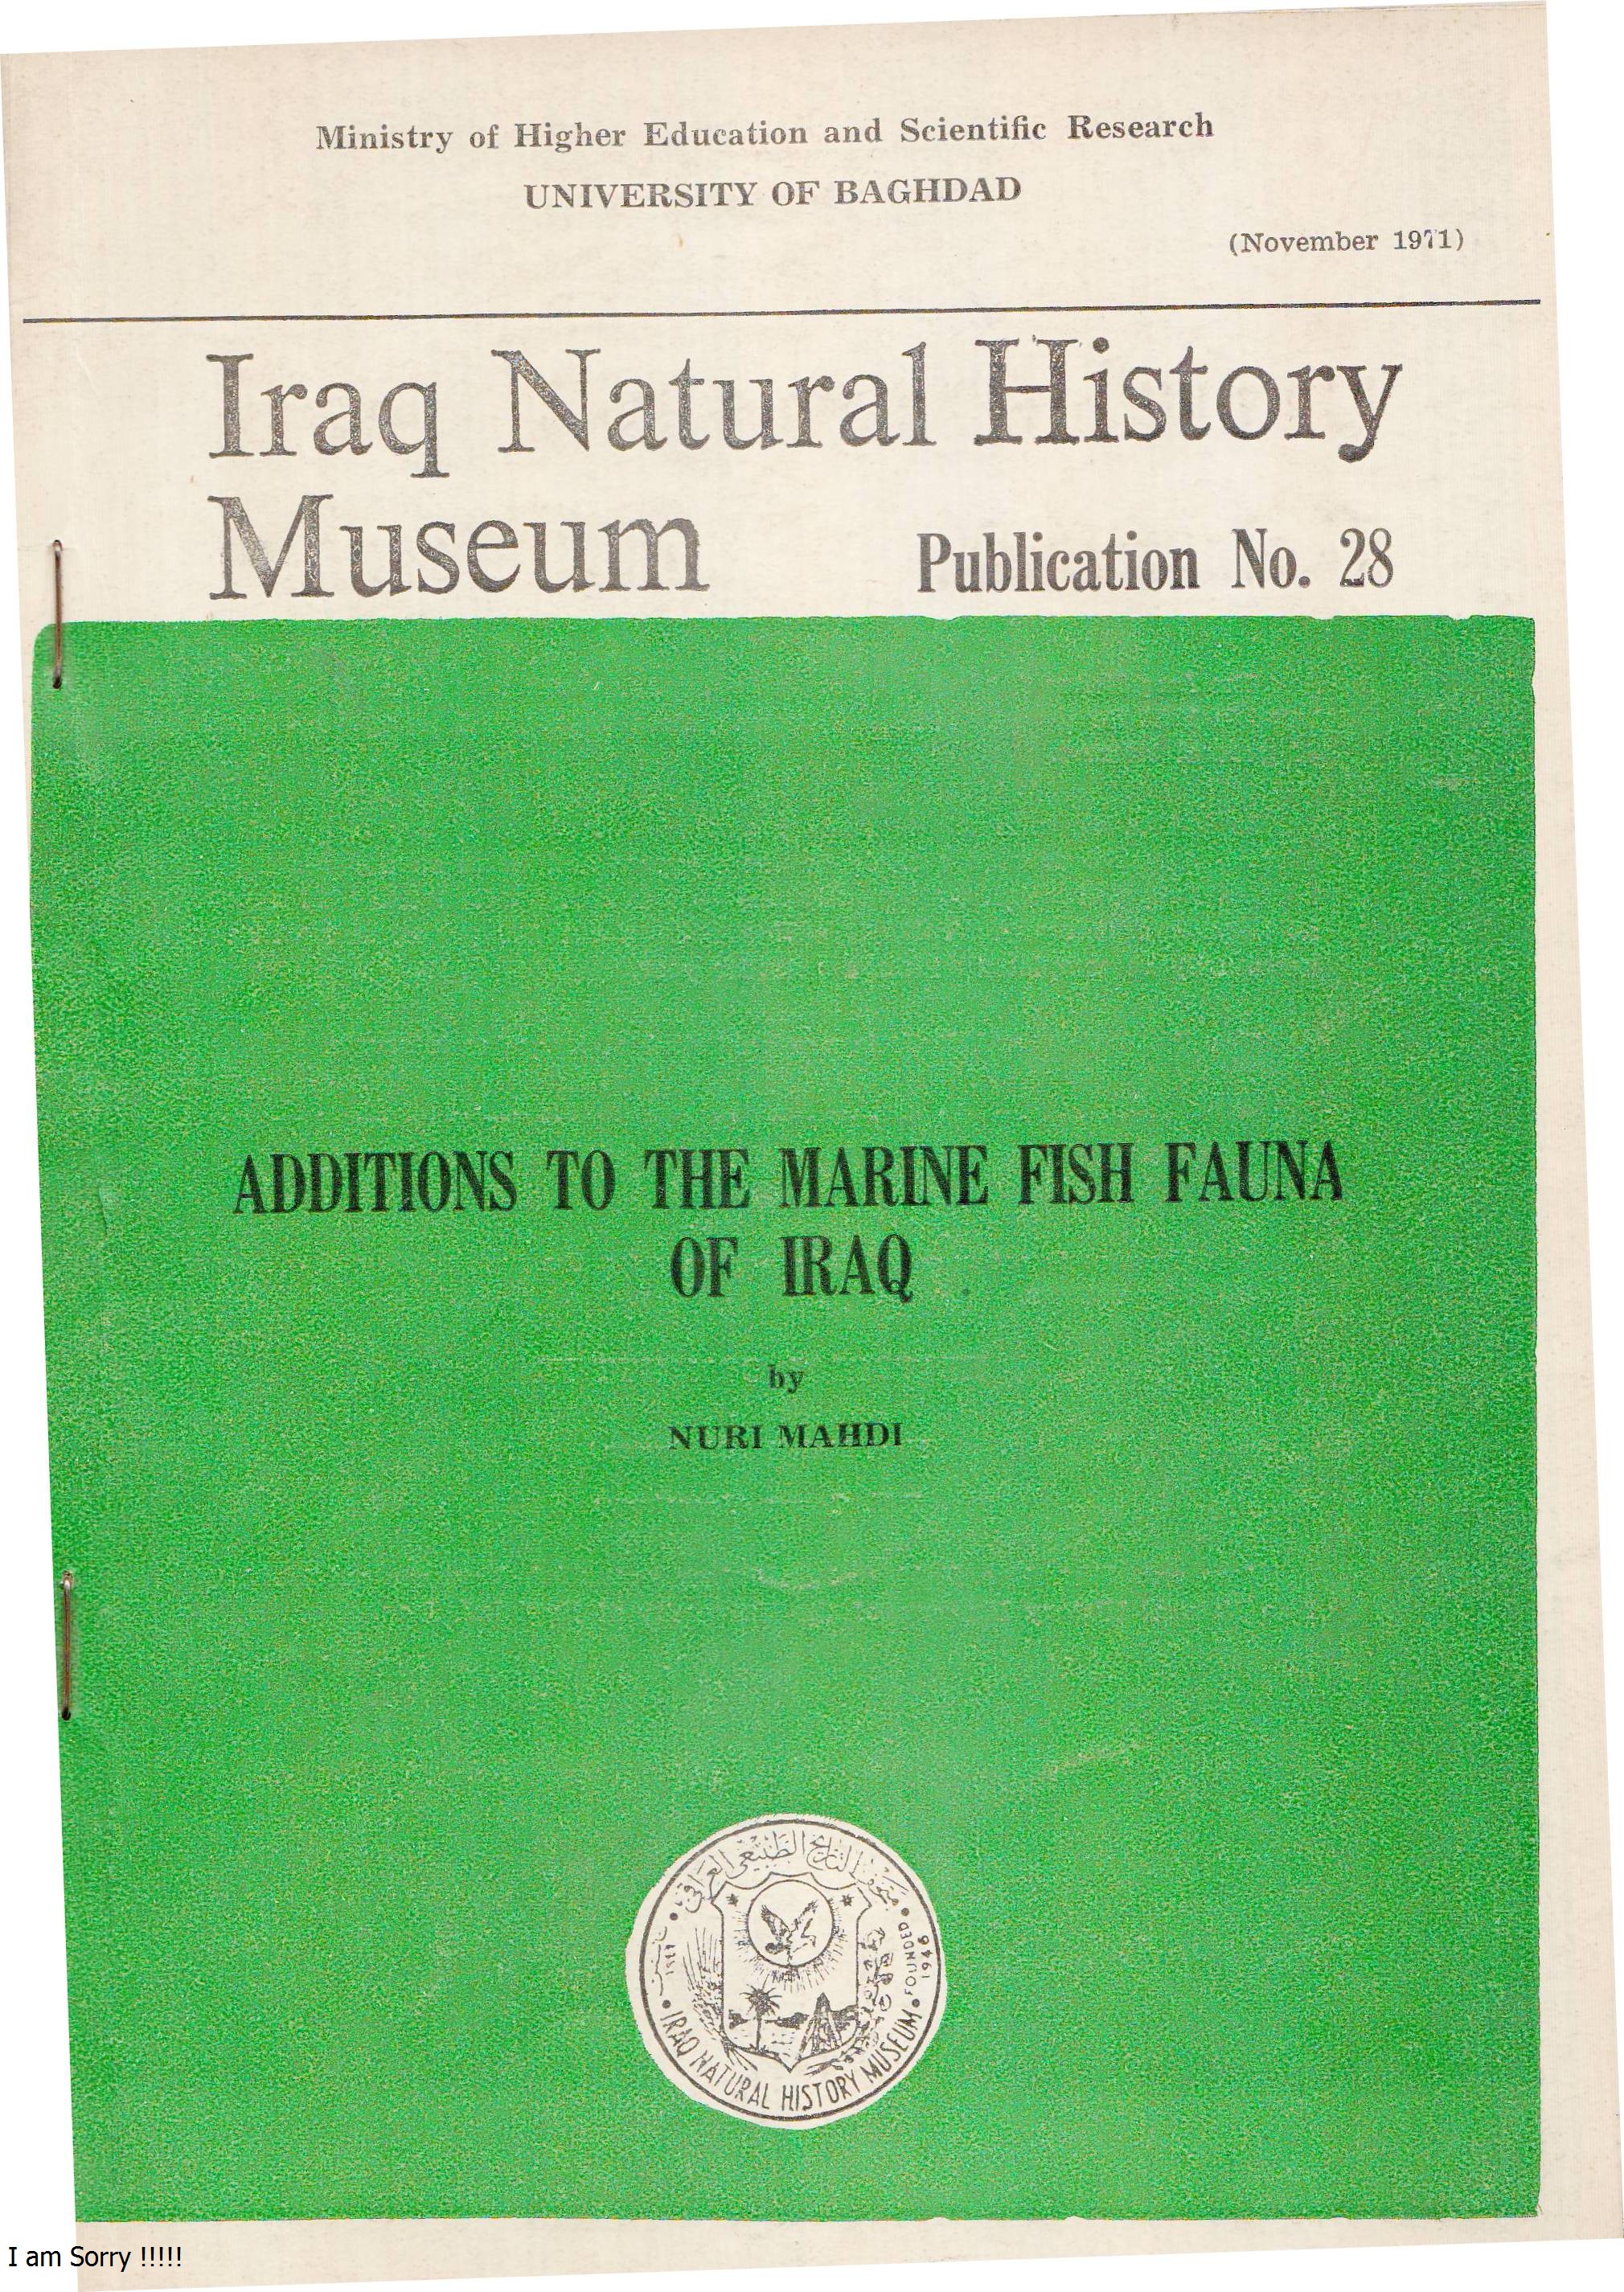 					View No. 28 (1971): Addition of Marine Fish Fauna of Iraq by NURI MAHDI, Iraq Nat.Hist. Mus, Baghdad, Iraq 
				